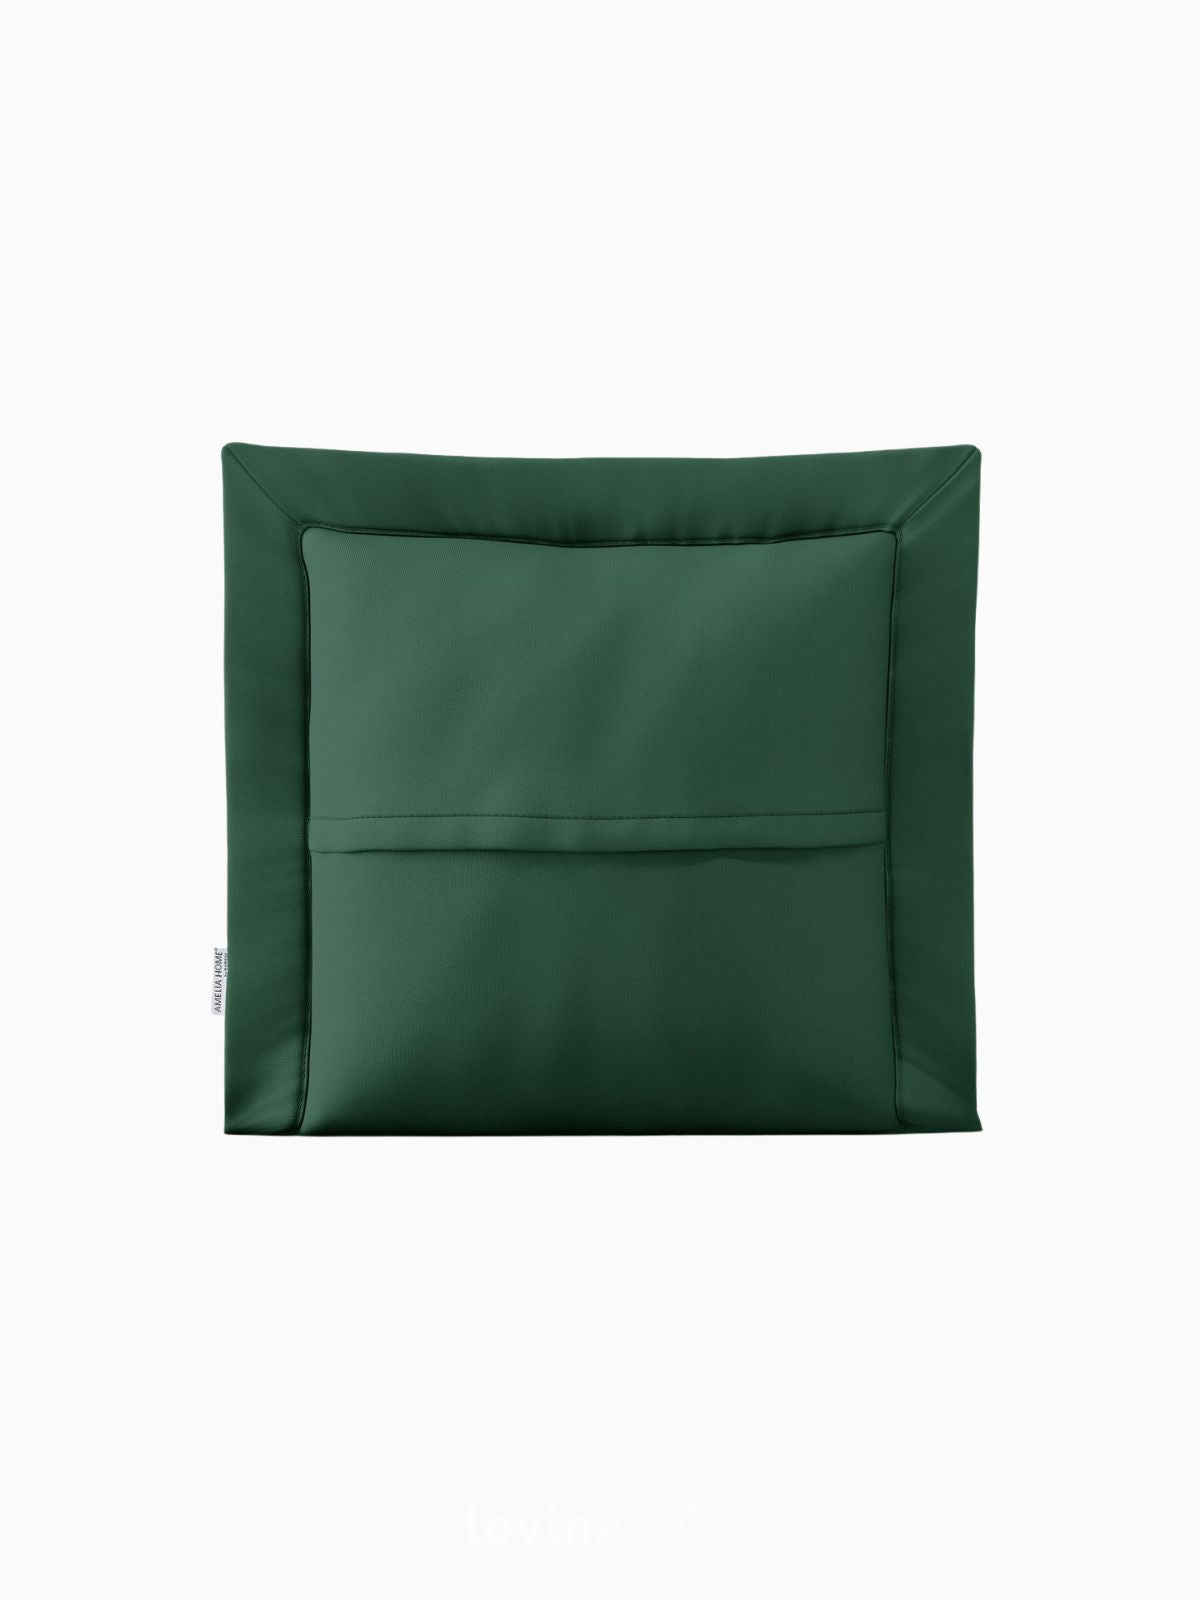 Cuscino decorativo Ophelia in colore verde 45x45 cm.-3